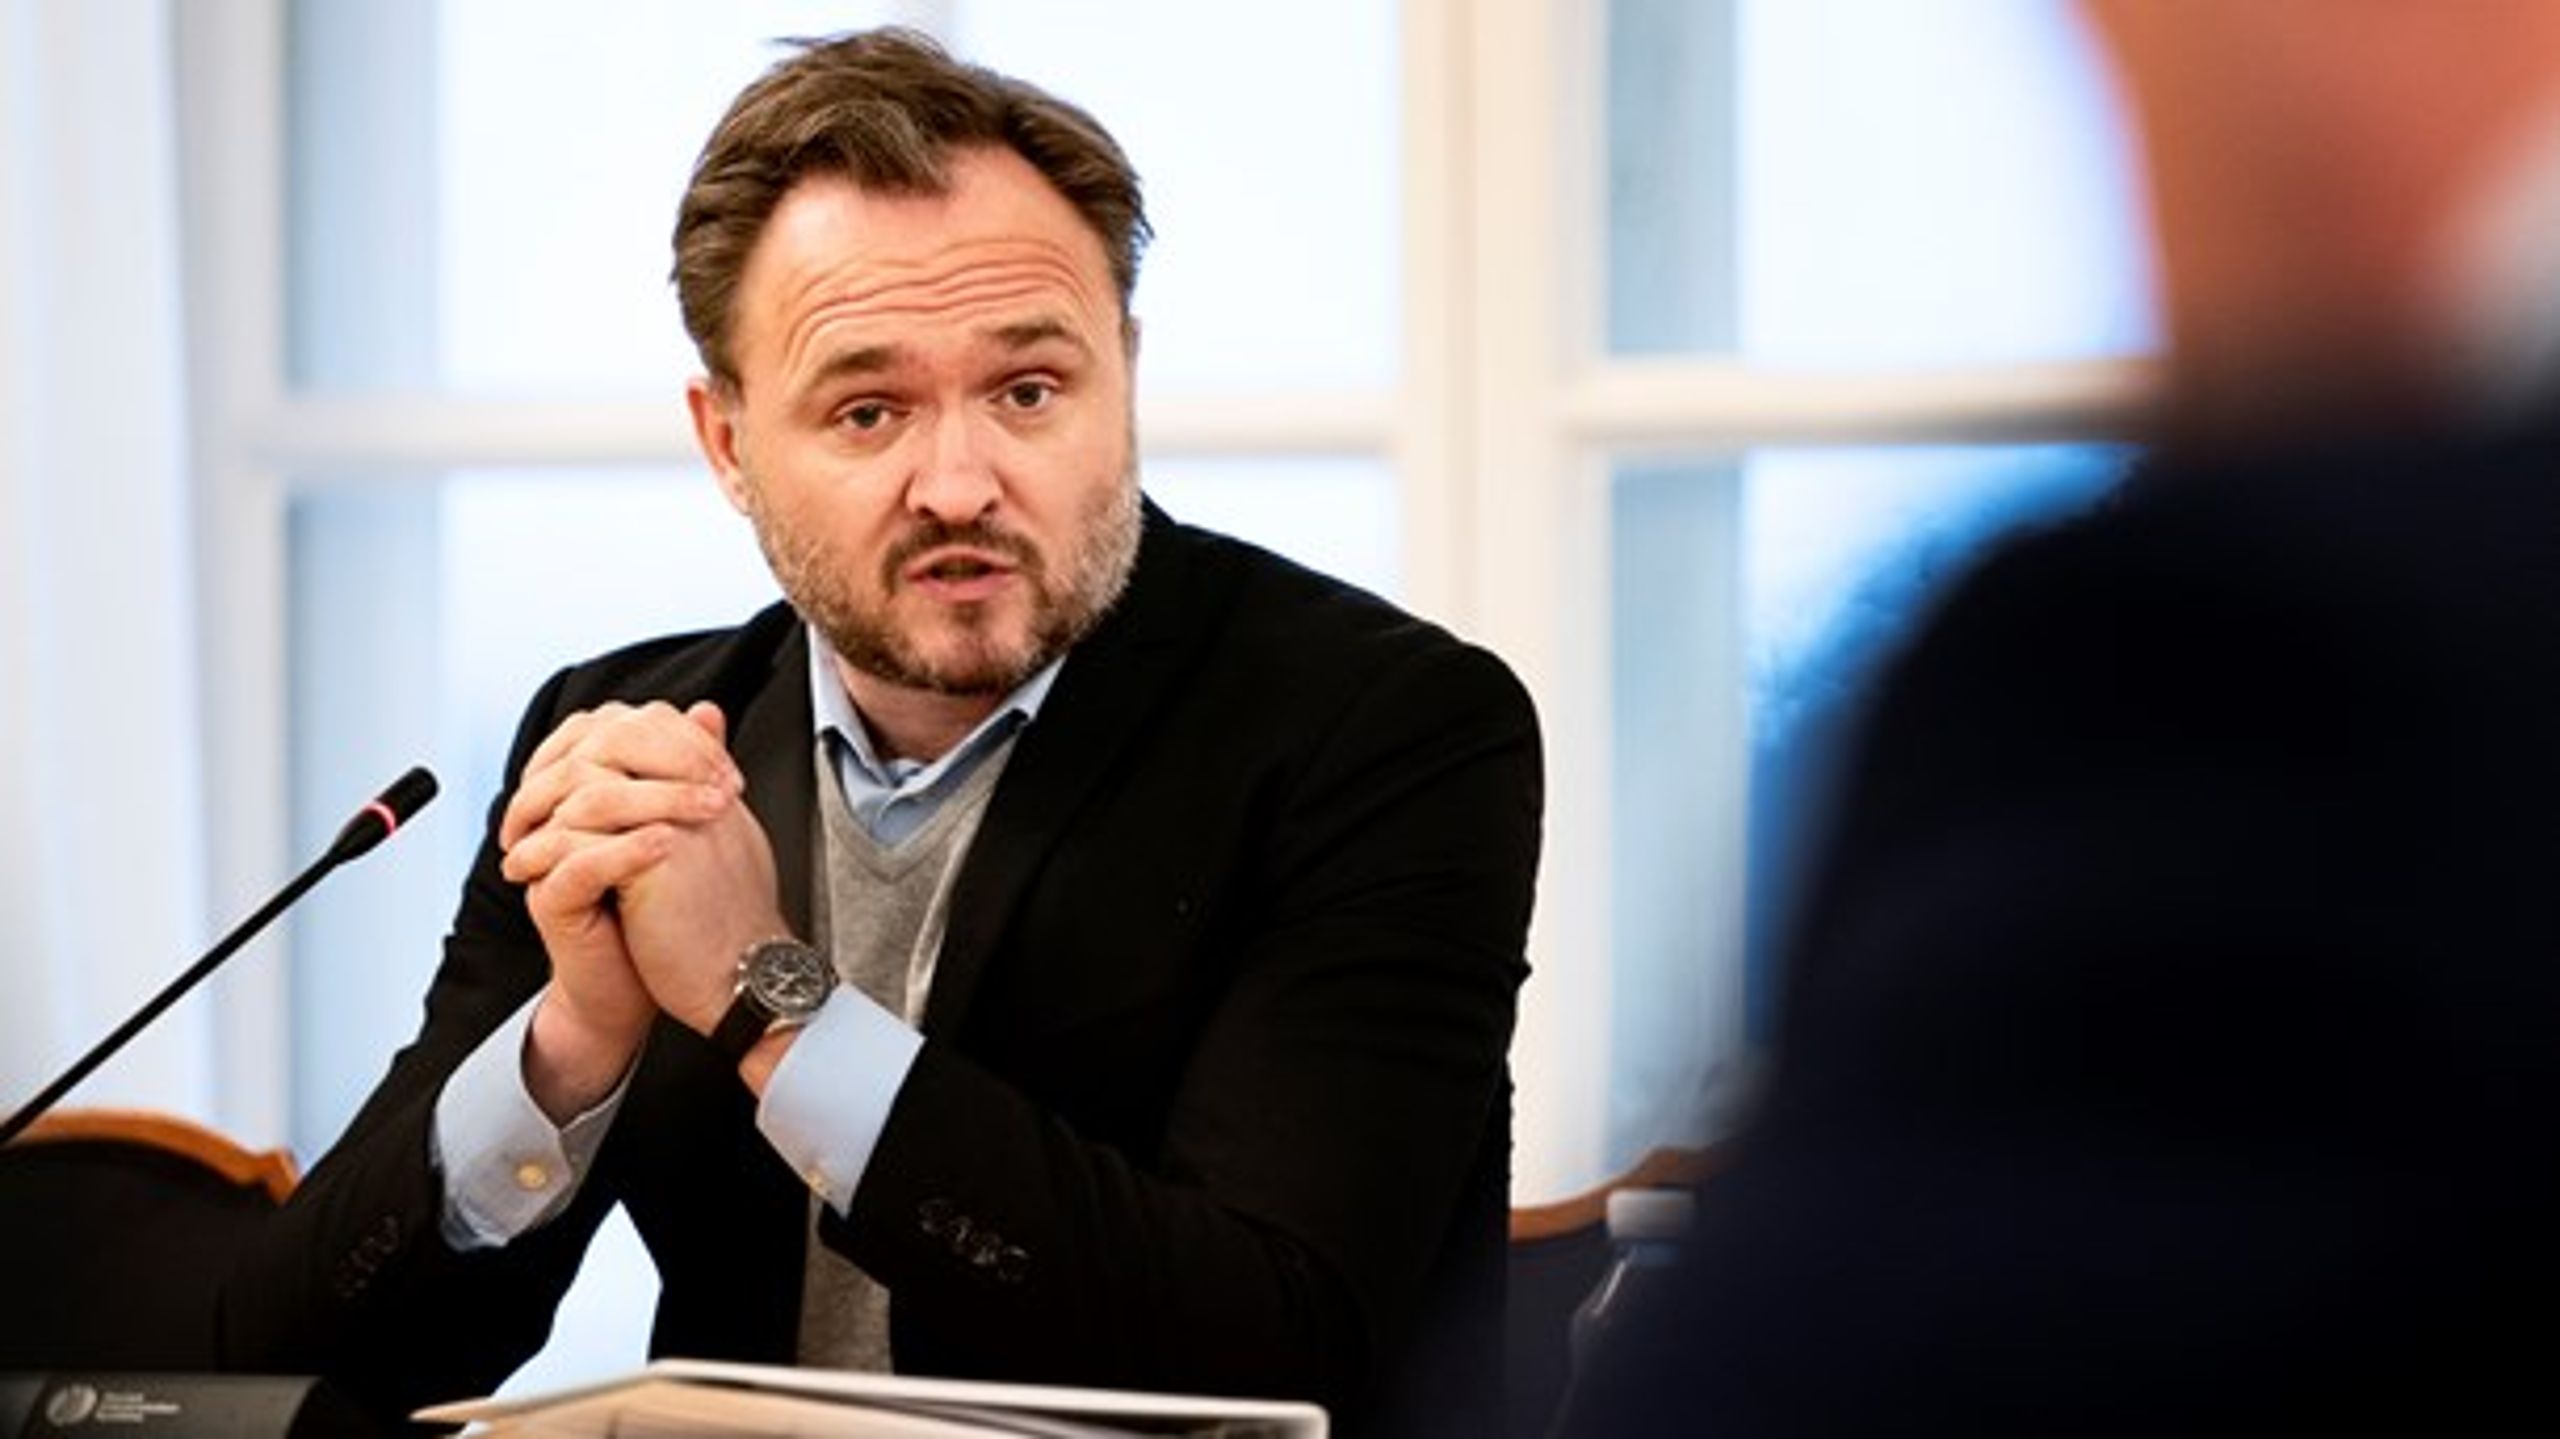 De nordiske klimaministre mødes på torsdag, hvor de har en god mulighed for at tage initiativ til at reparere relationerne mellem rige og fattige lande, skriver Mattias Söderberg.